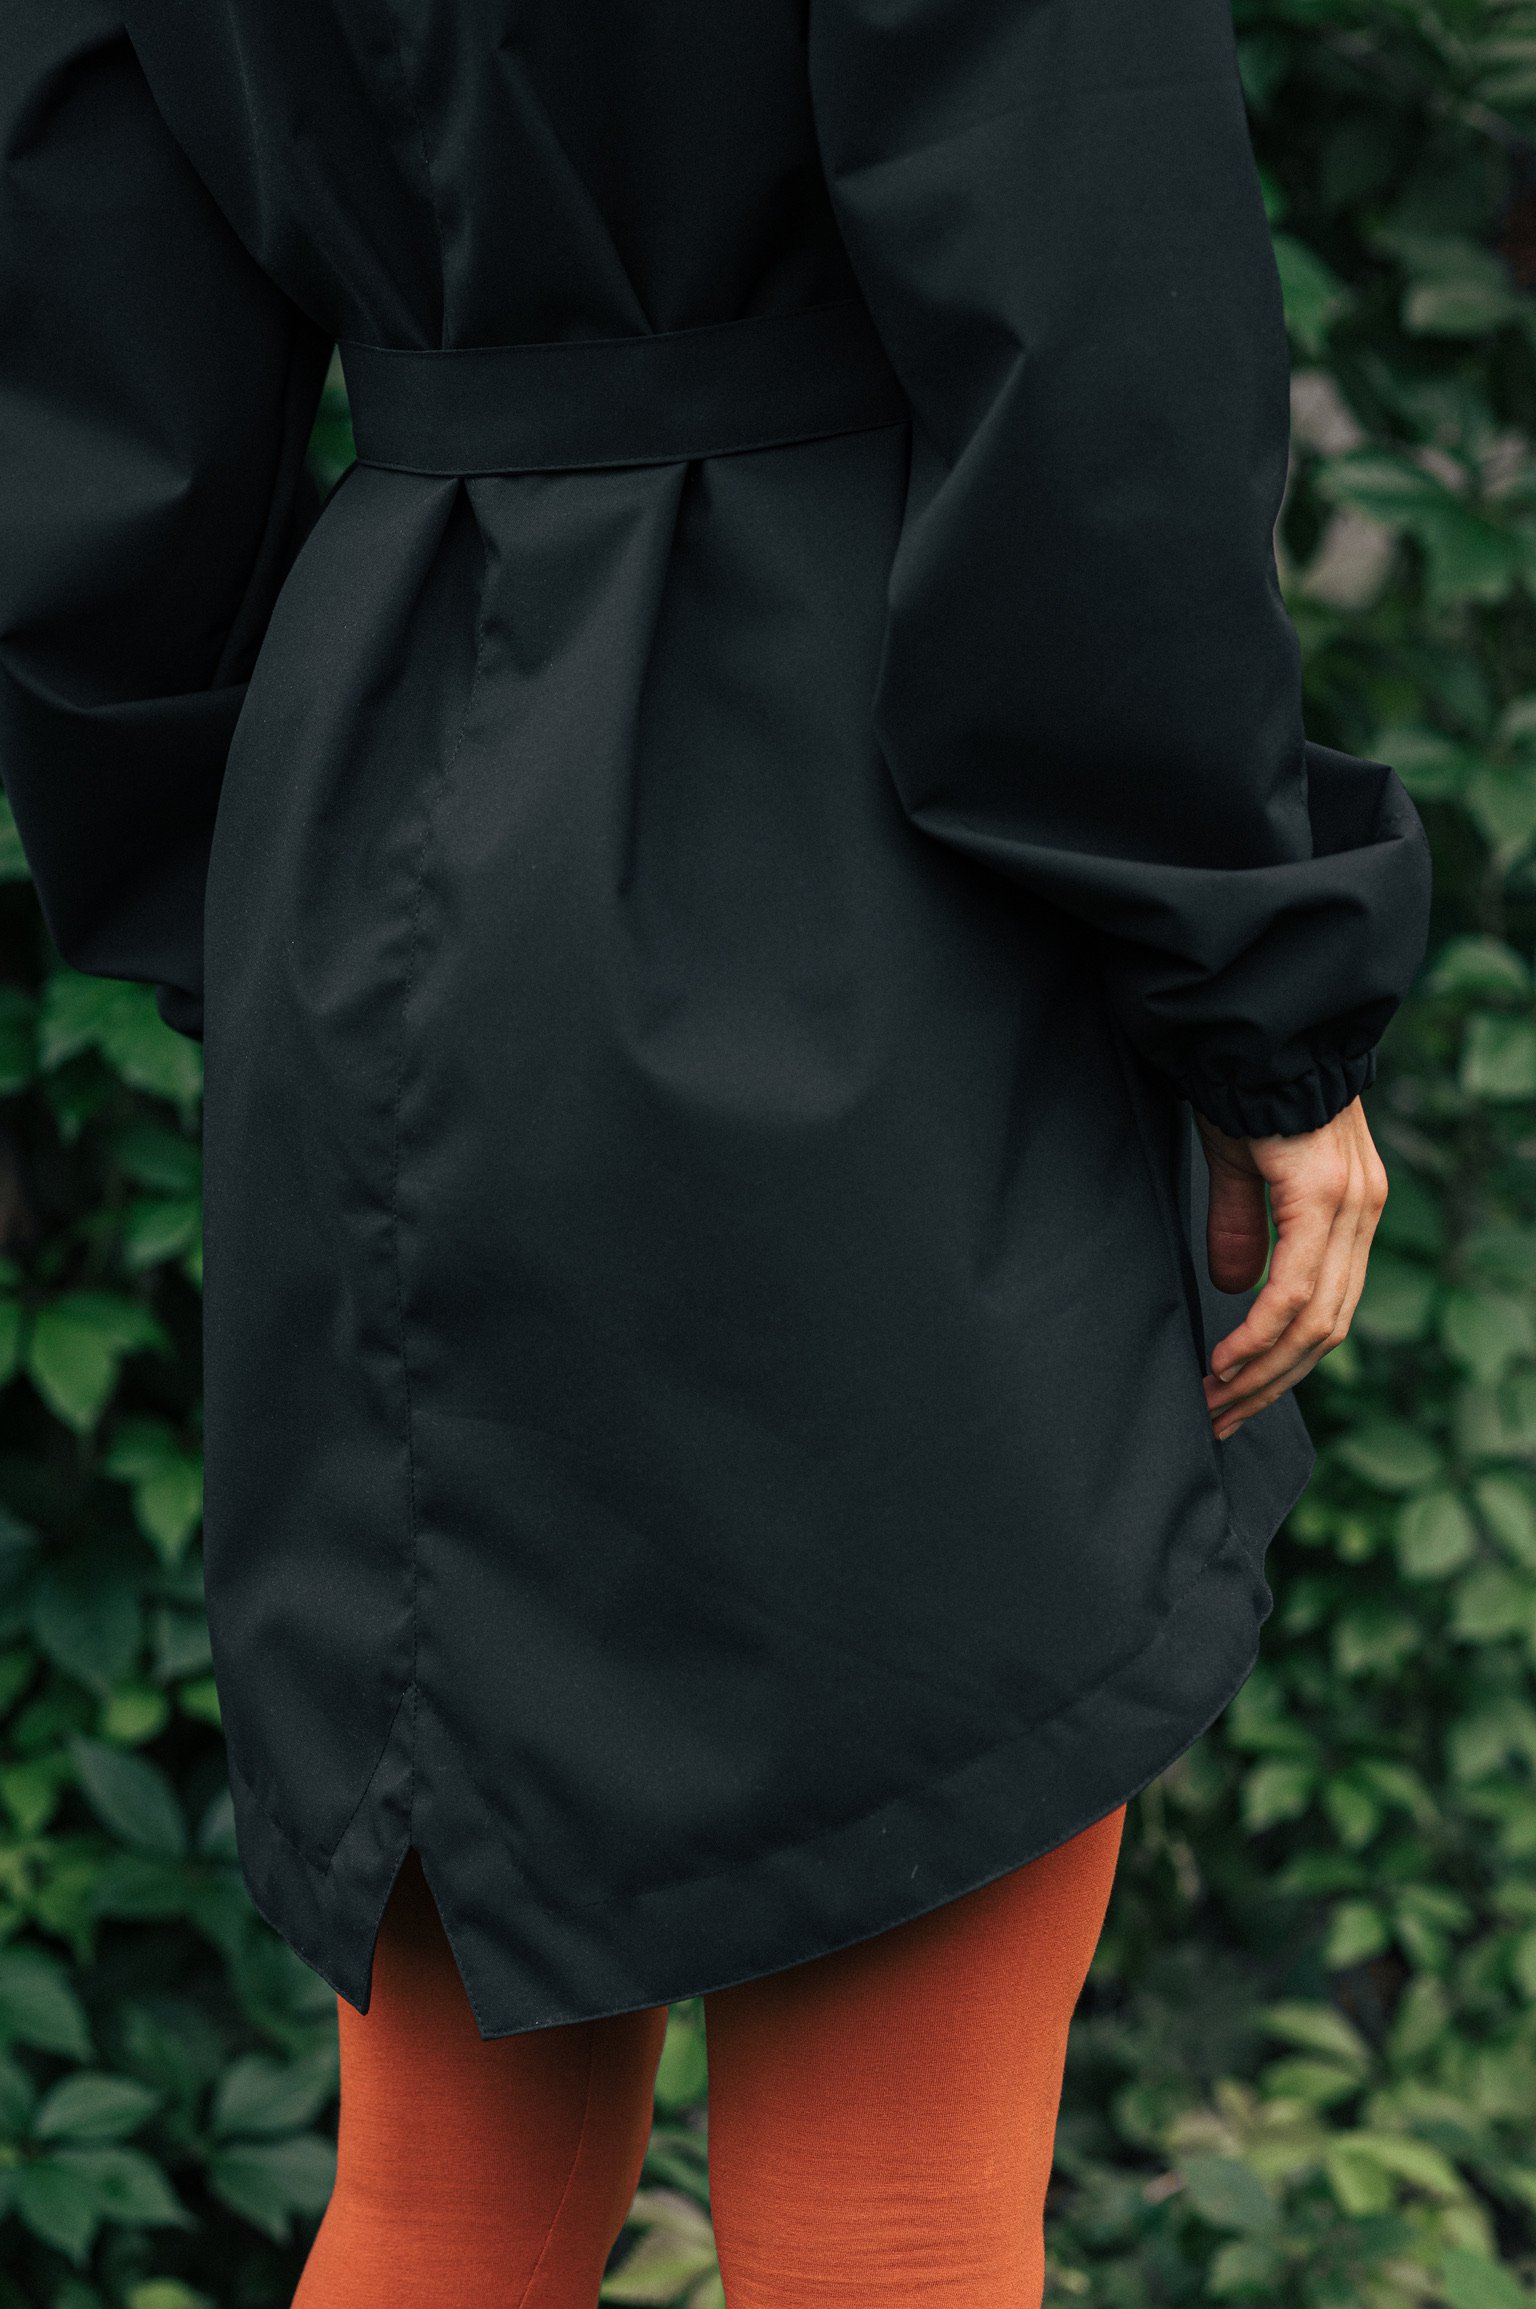 Jackets & coats Ebby black